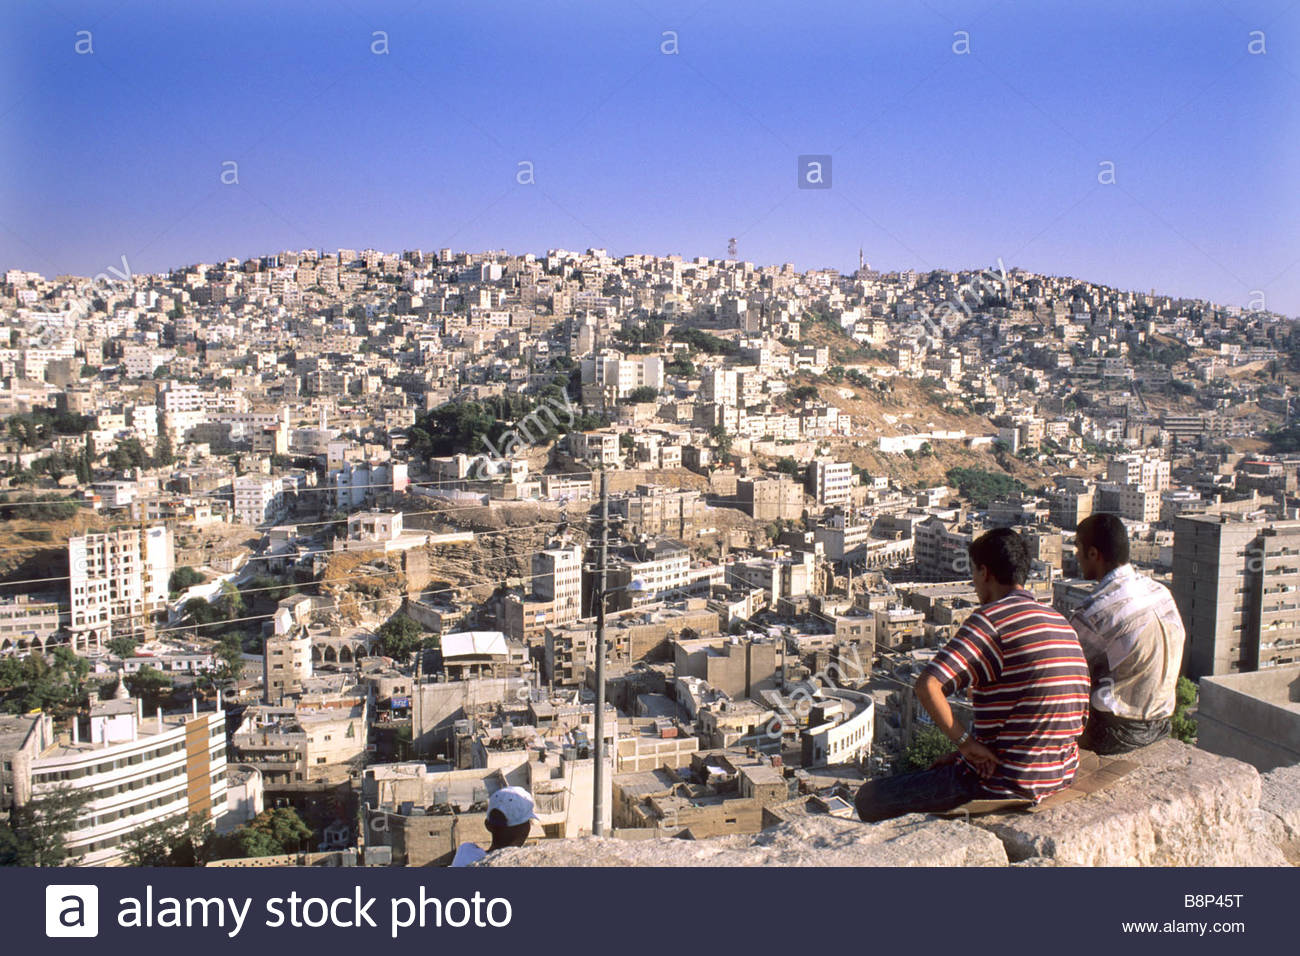 jaresh, jordan, asia Stock Photo - Alamy